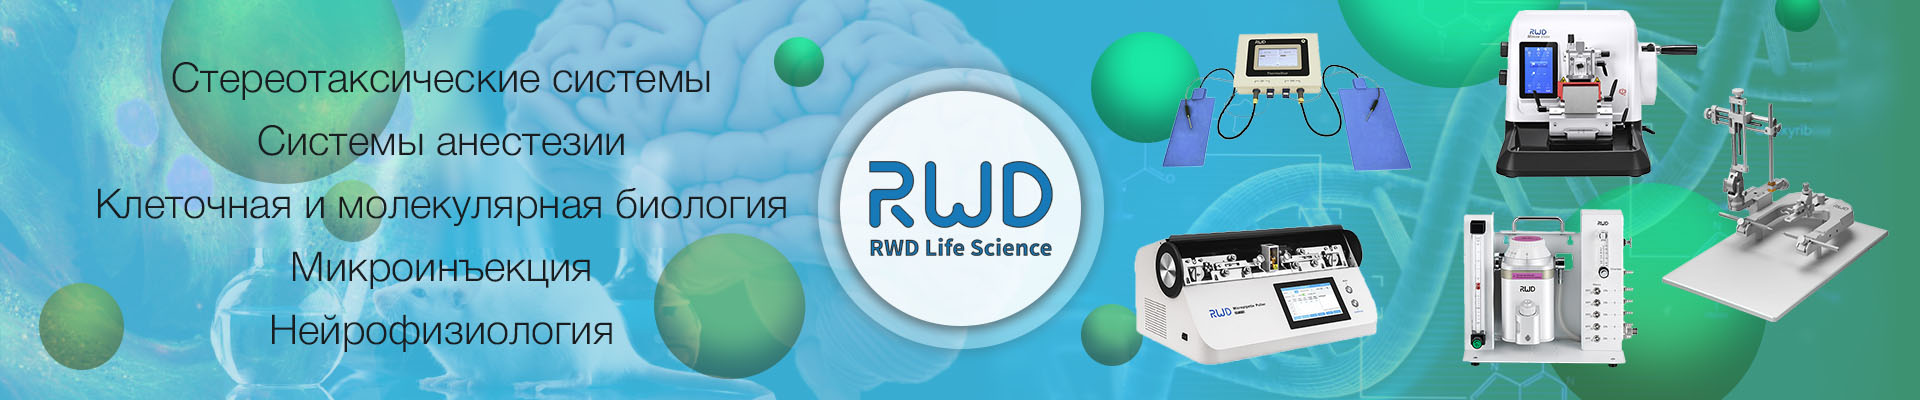 Купить оборудование RWD: стереотаксические системы, системы анестезии для животных, клеточная и молекулярная биология, микроинъекции, нейрофизиология